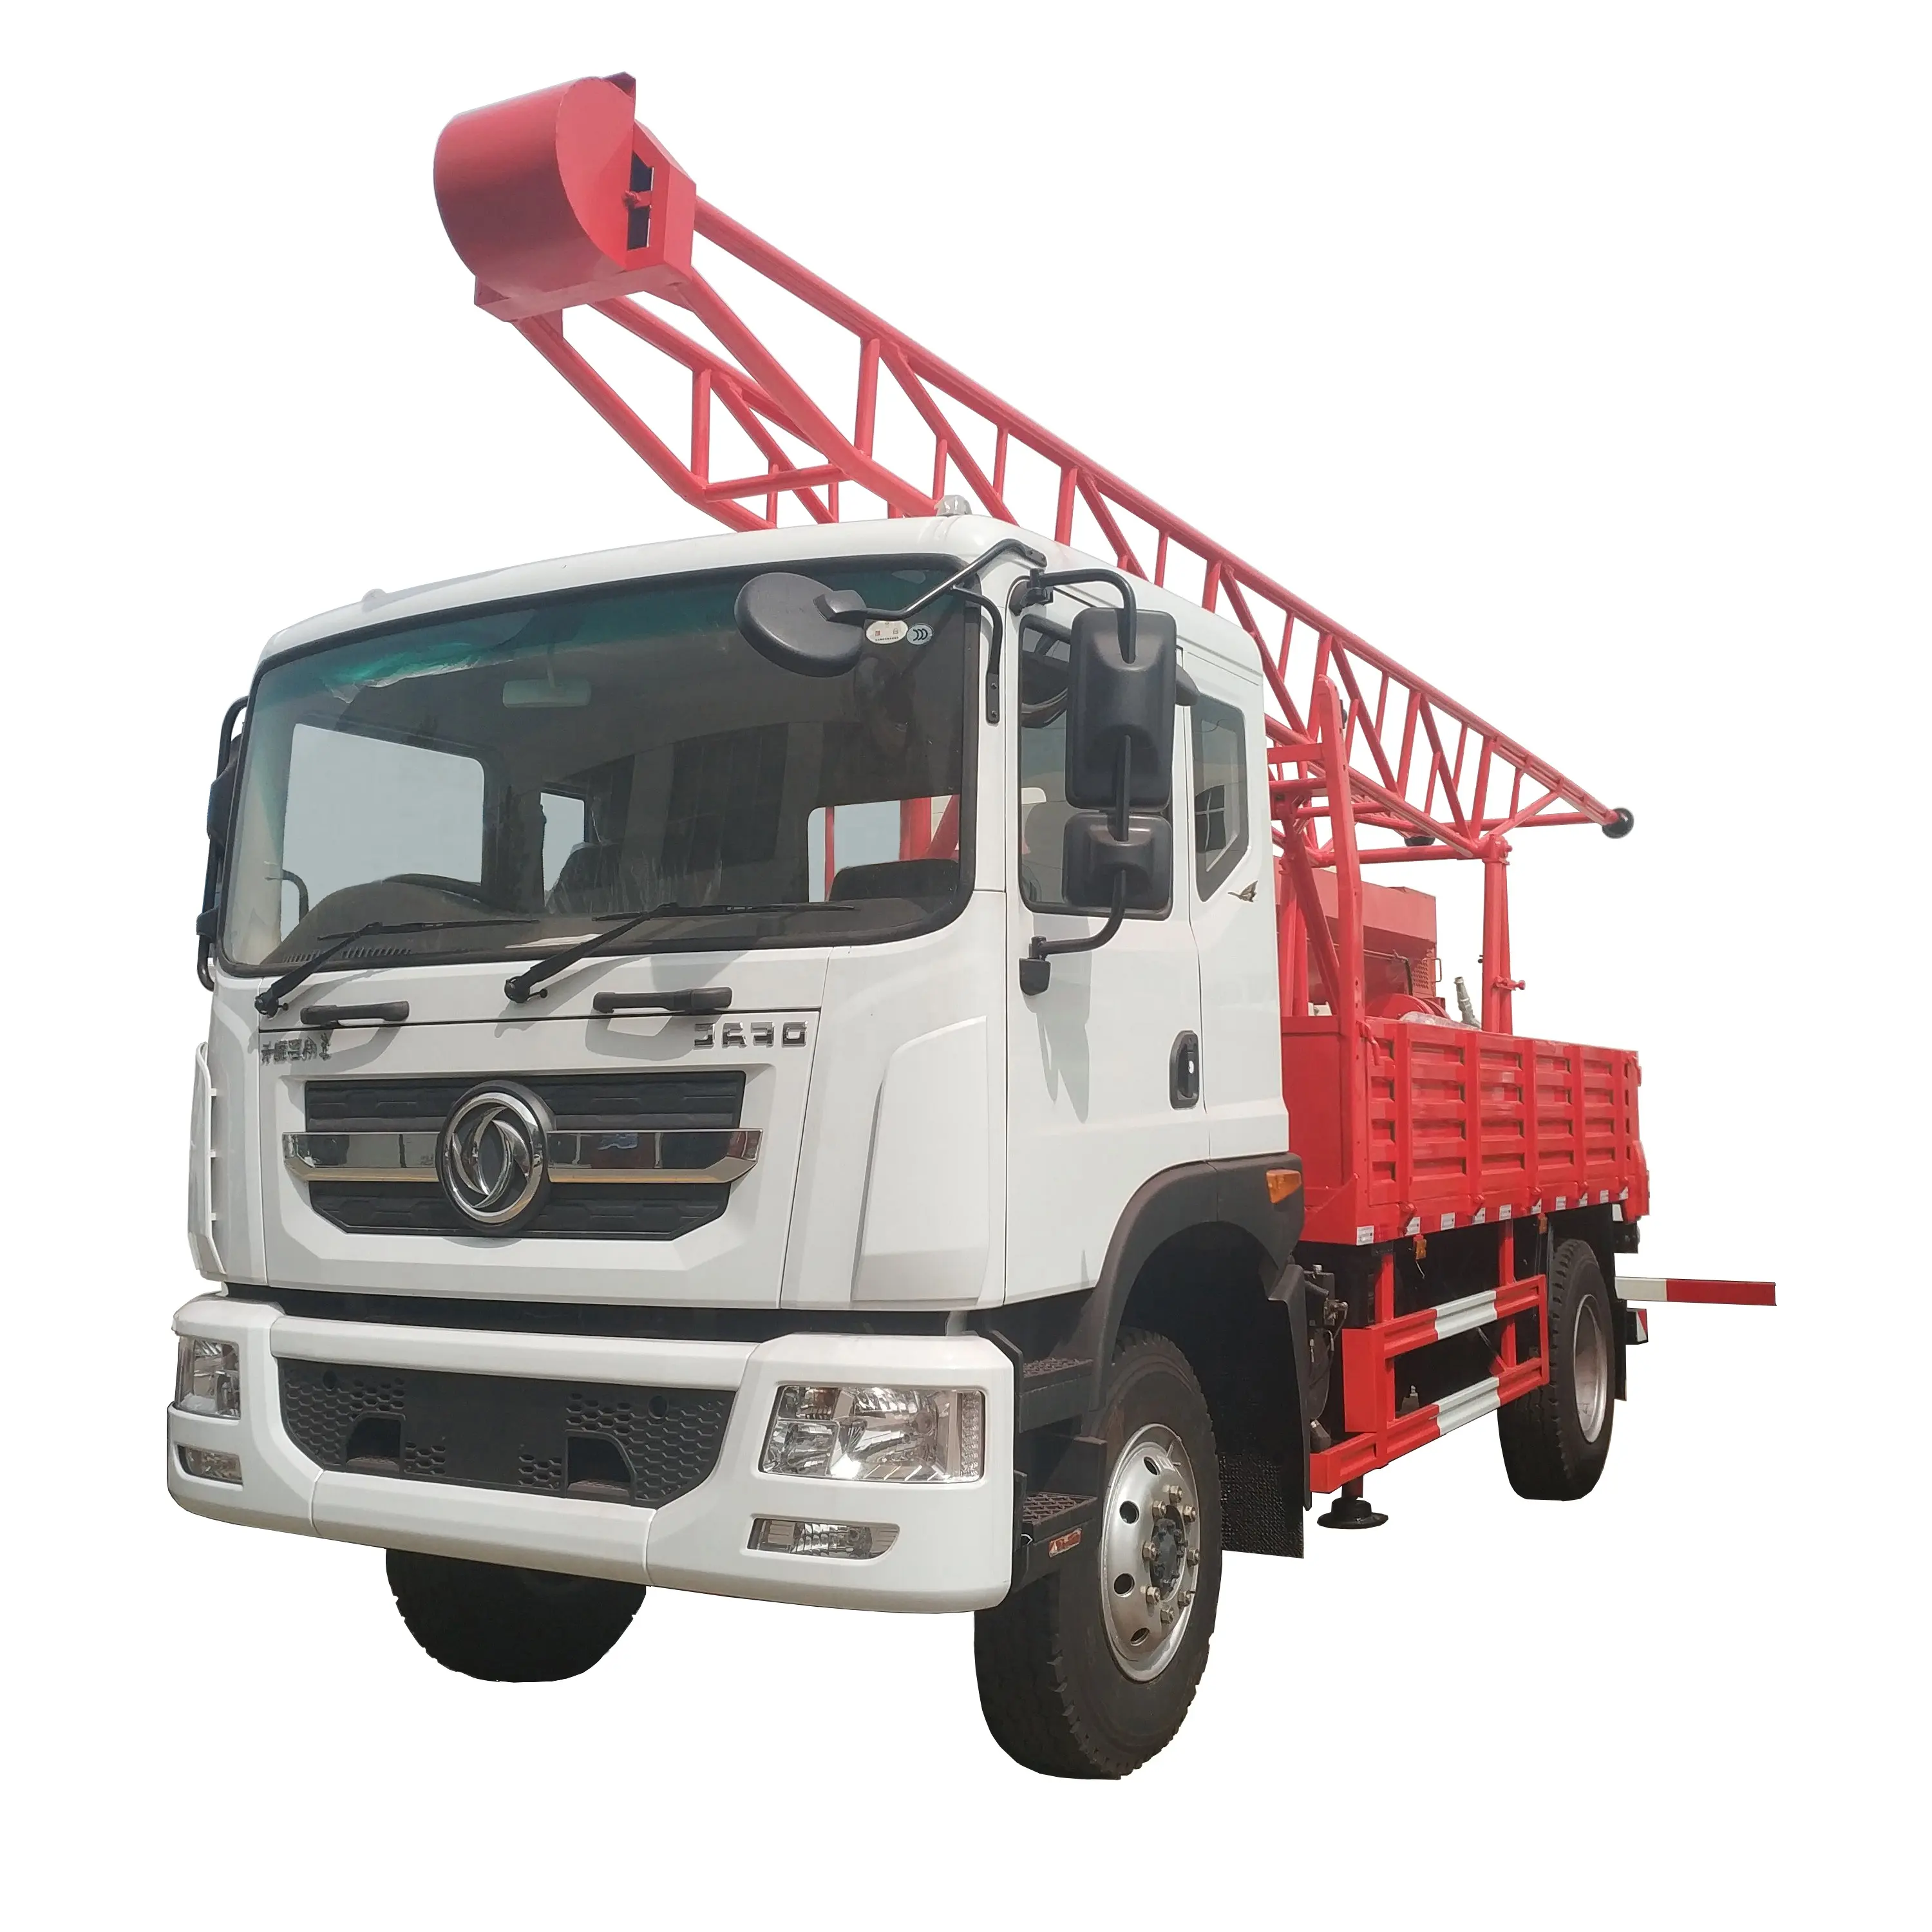 Makita 500m di Profondità camion Per l'industria mineraria di Perforazione un acqua di pozzo potenza trapani piattaforma mobile